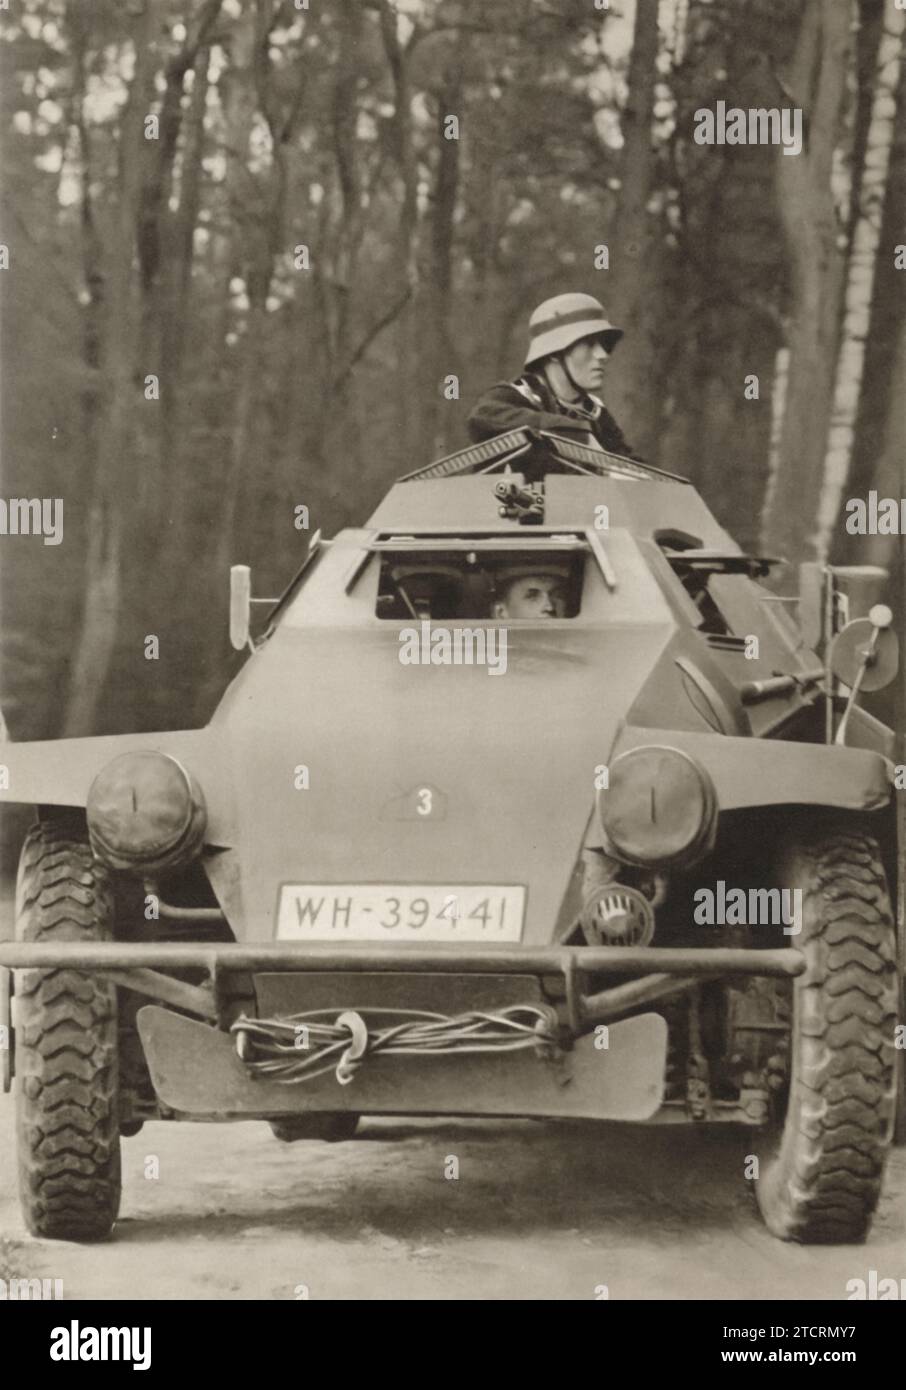 In einem kompakten gepanzerten Fahrzeug übernehmen deutsche Soldaten ihre Rollen: Eine als Fahrer, sichtbar durch die Frontluke, und eine andere als Hauptschützen, der eine leichte Maschinenpistole (LMG) von oben aus bedient. Diese effiziente Raumnutzung und Aufgabenverteilung war charakteristisch für die Panzerfahrzeugkonstruktion des deutschen Militärs in der Zeit um den Zweiten Weltkrieg Stockfoto